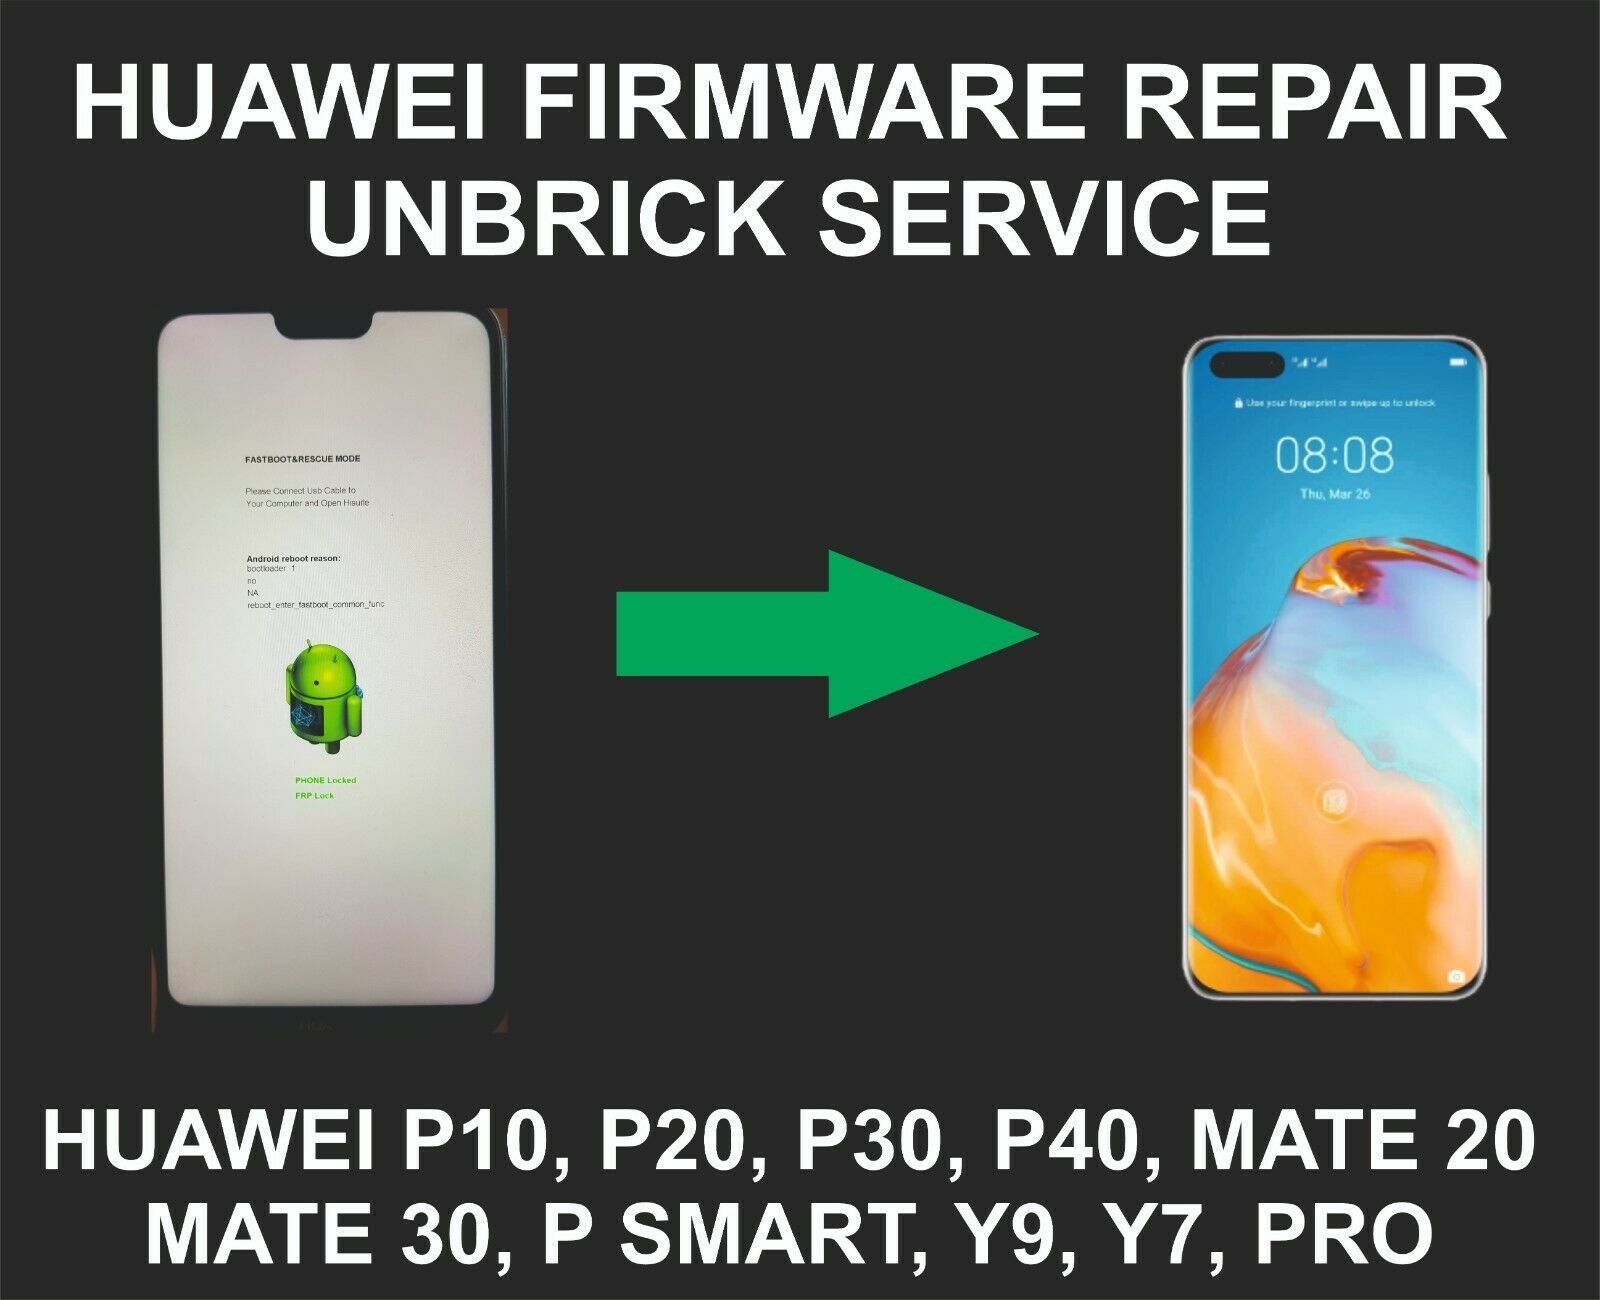 Huawei Firmware Repair Service, Unbrick, P10, P20, P30, P40, Mate 30, Mate 20 P